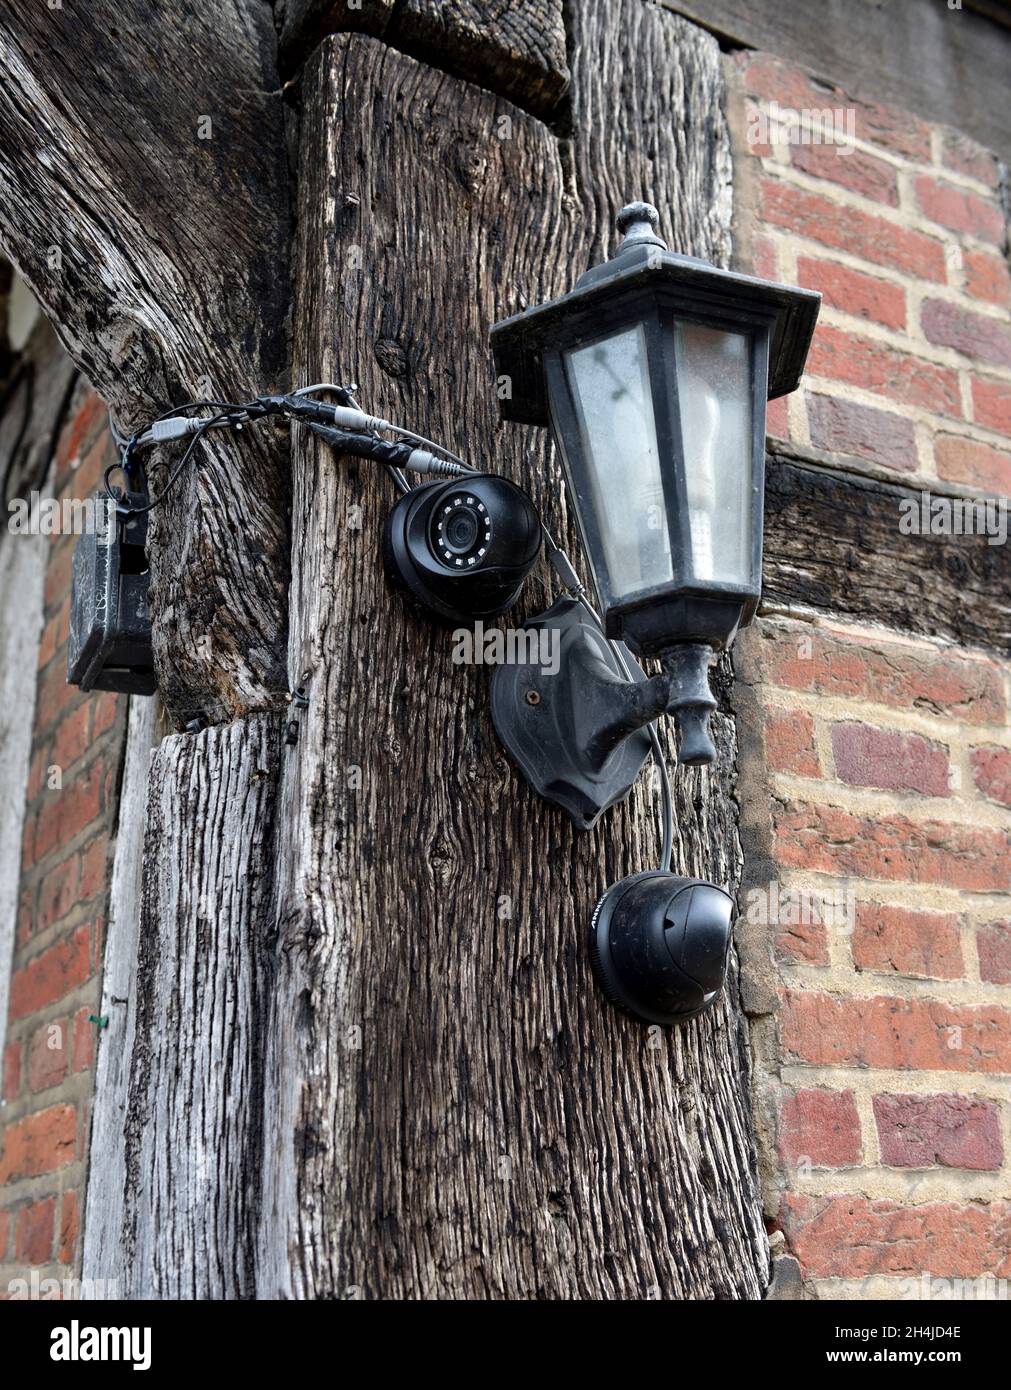 Zwei Sicherheitskameras für den Außenbereich und eine Wandleuchte auf einem Holzrahmen aus altem, traditionellem Gebäude in Großbritannien Stockfoto